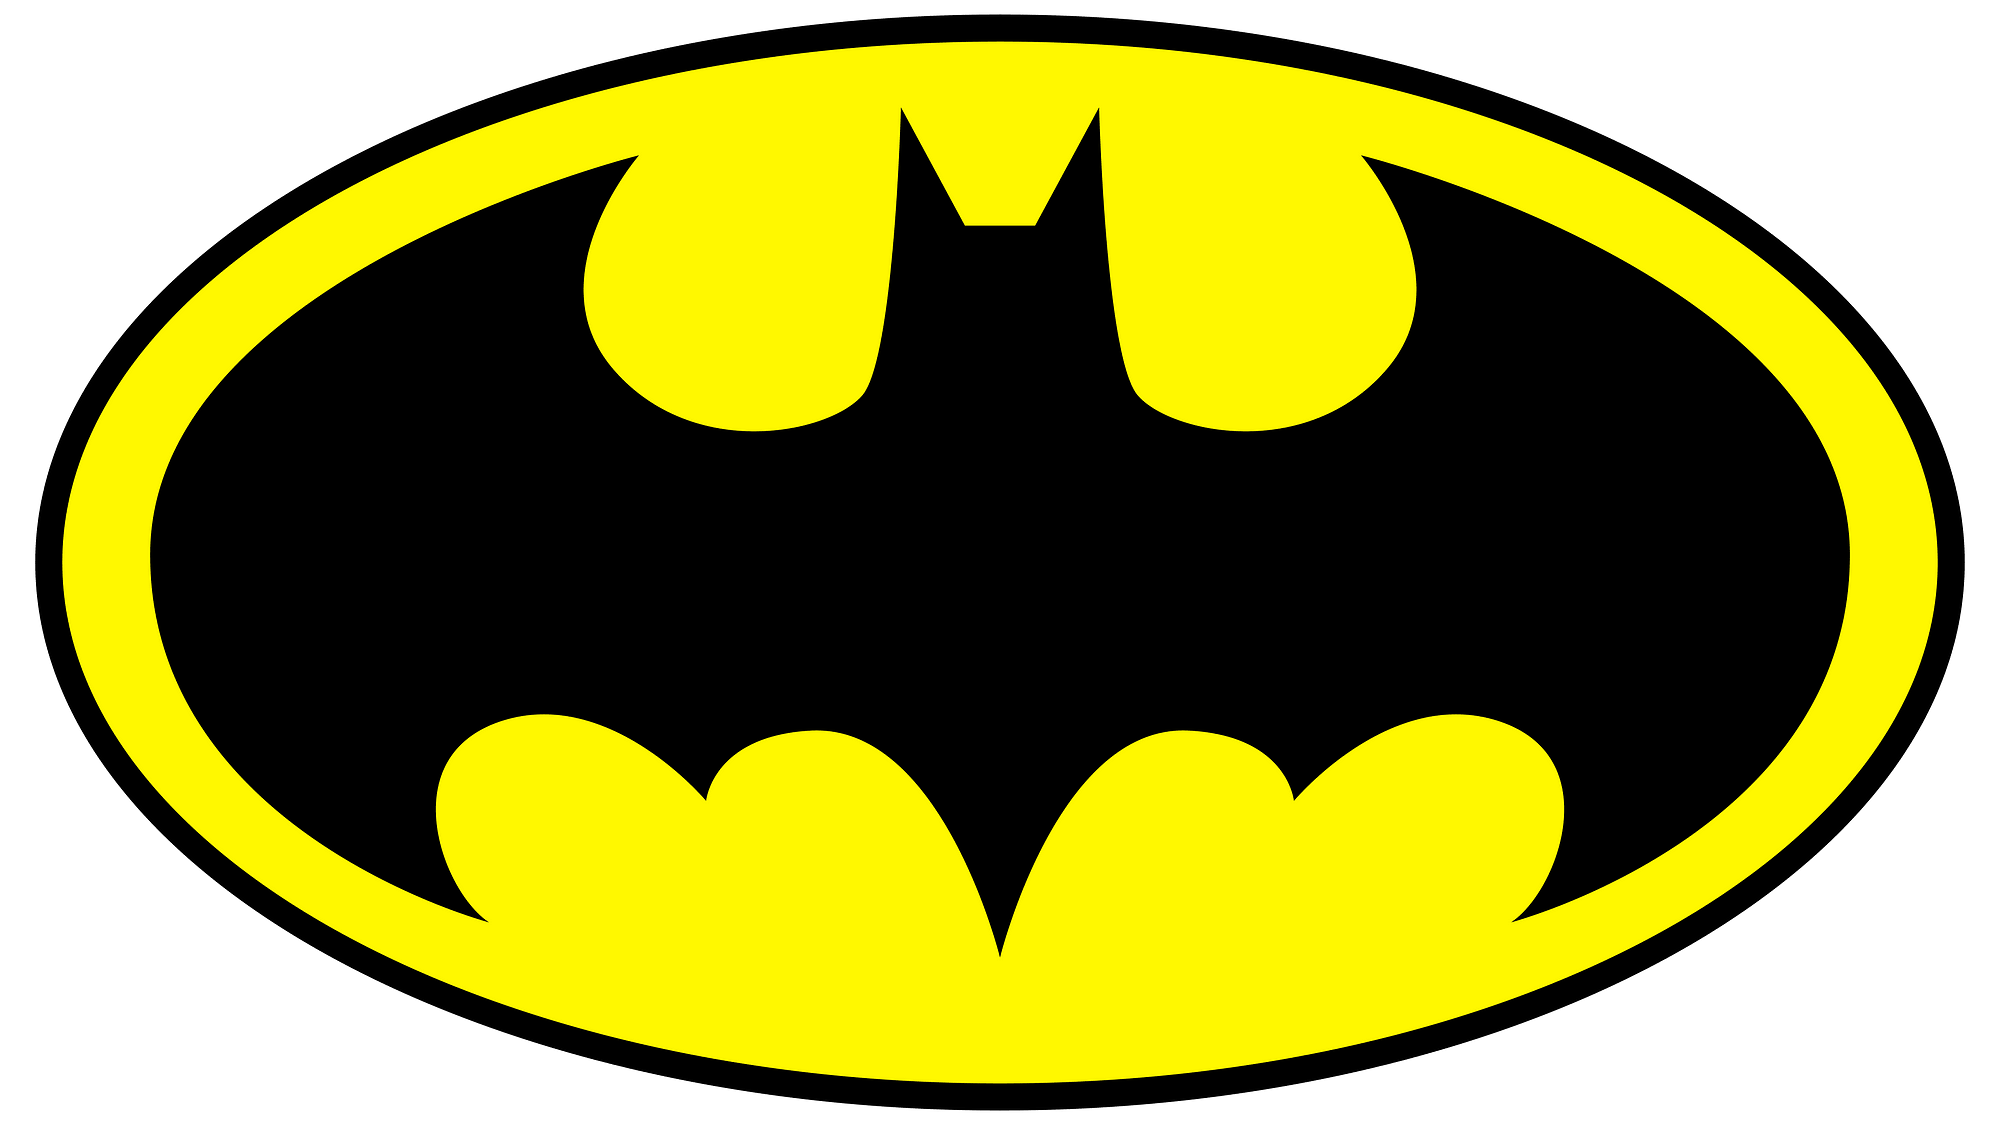 蝙蝠俠標誌是眾所周知的徽標。